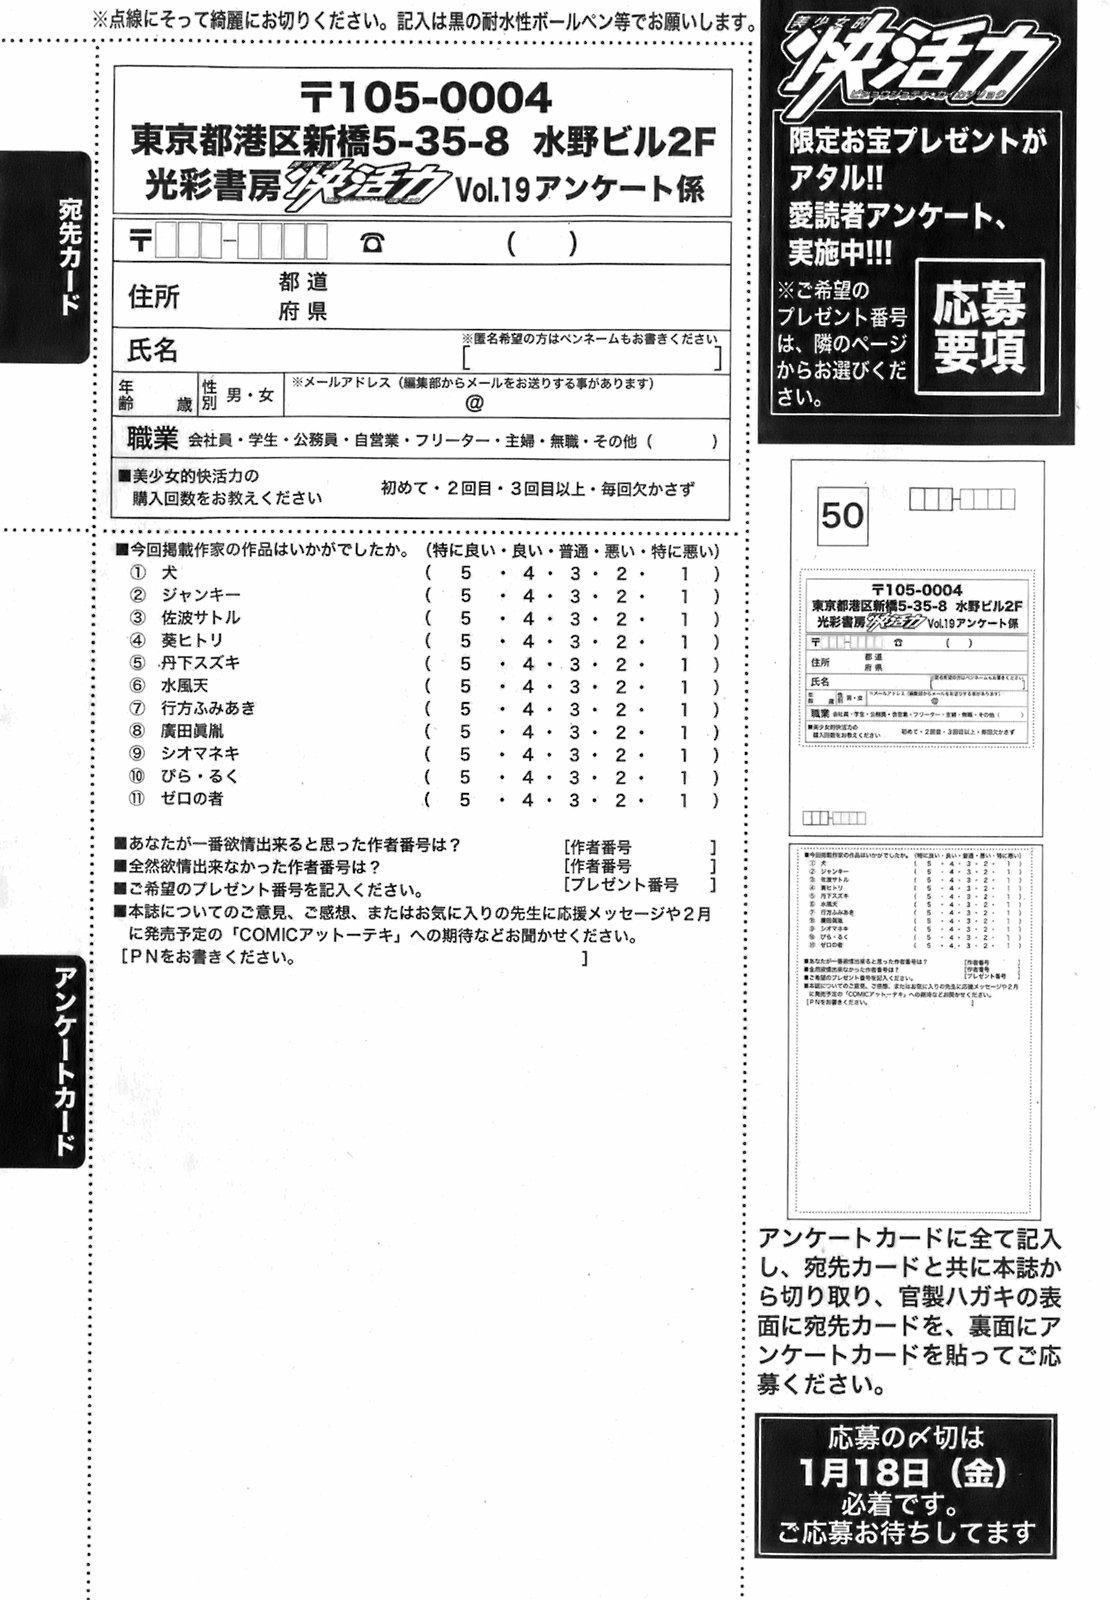 Bishoujo Teki Kaikatsu Ryoku 2008 Vol.19 192